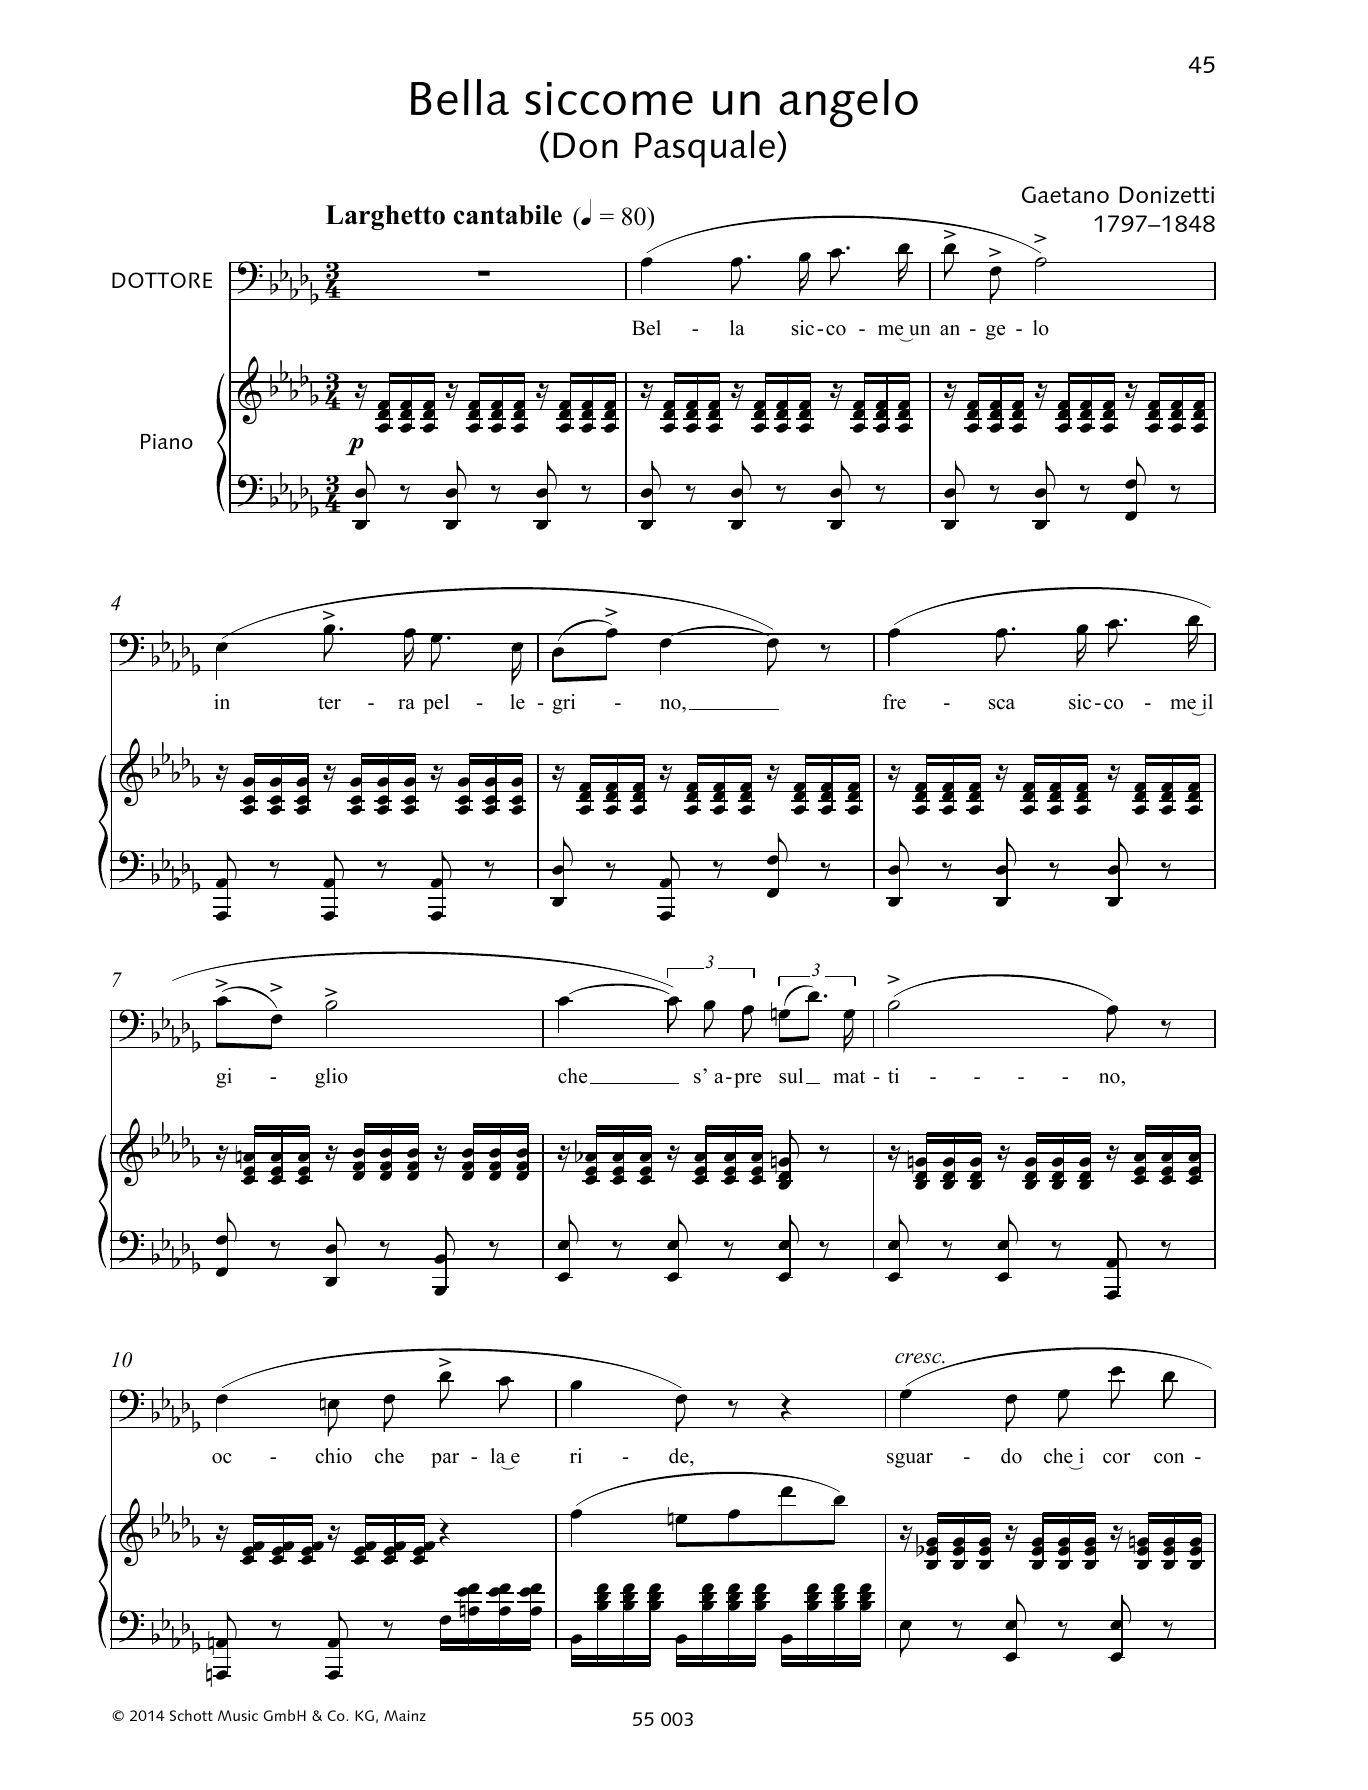 Francesca Licciarda Bella siccome un angelo sheet music notes and chords arranged for Piano & Vocal